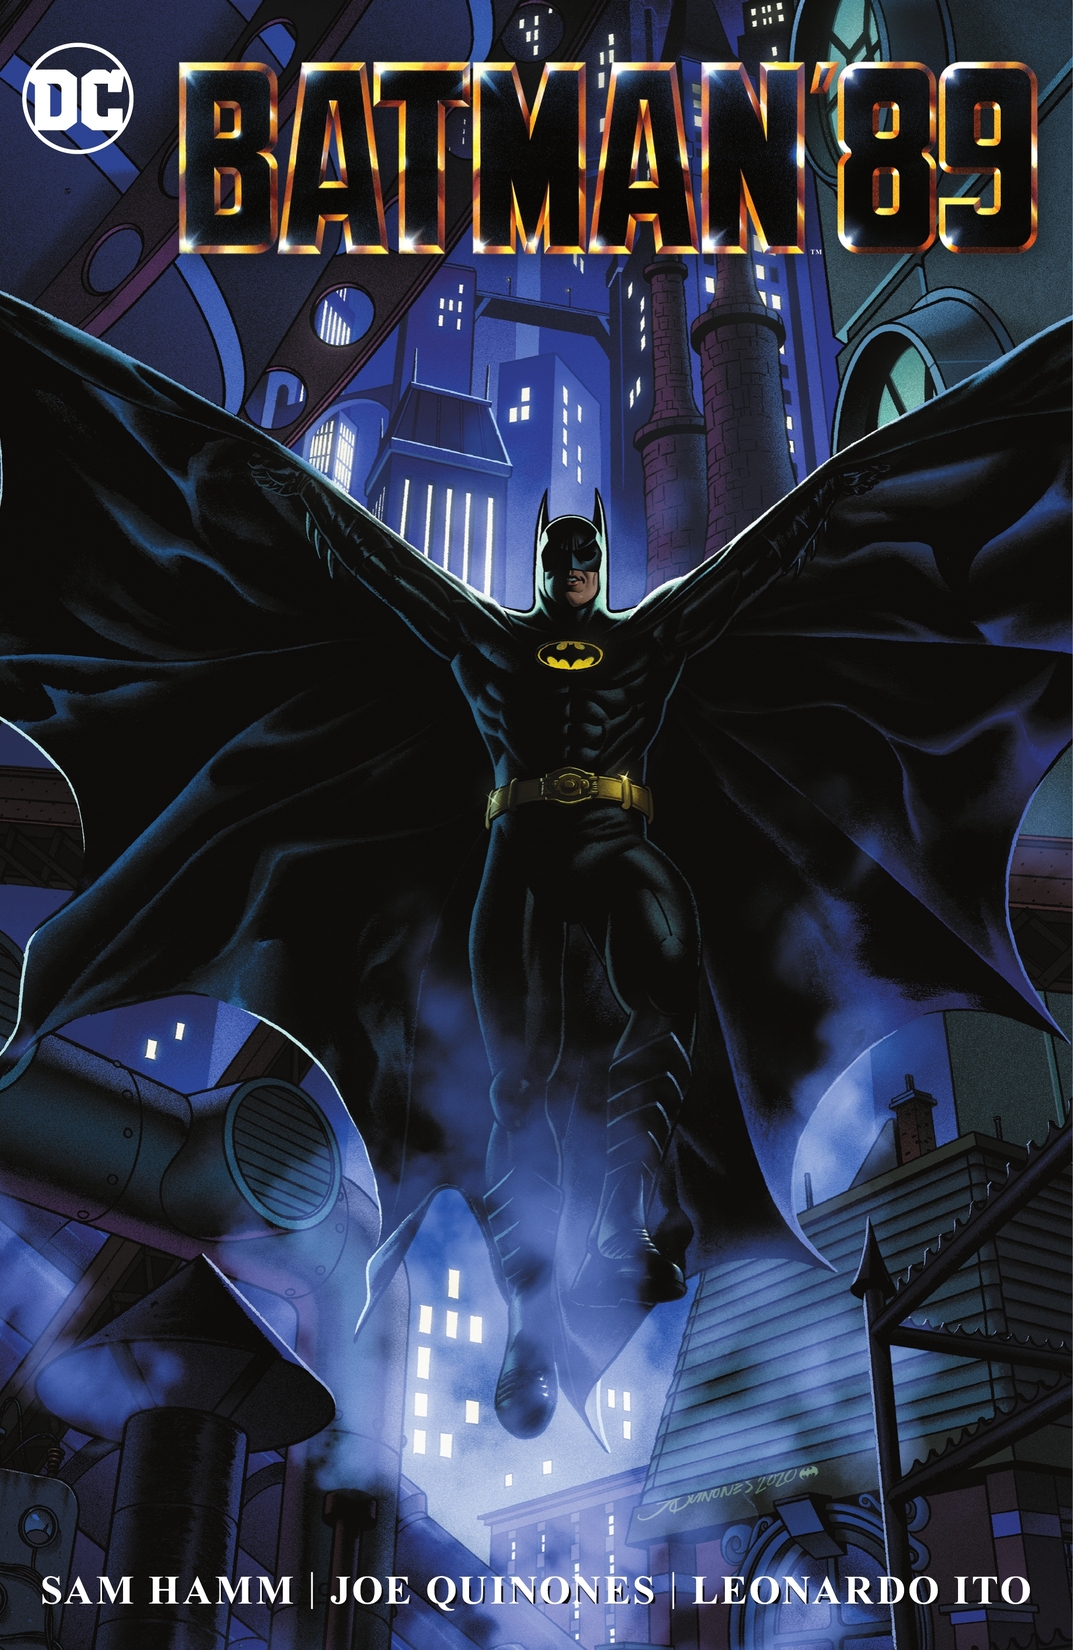 Batman '89 preview images